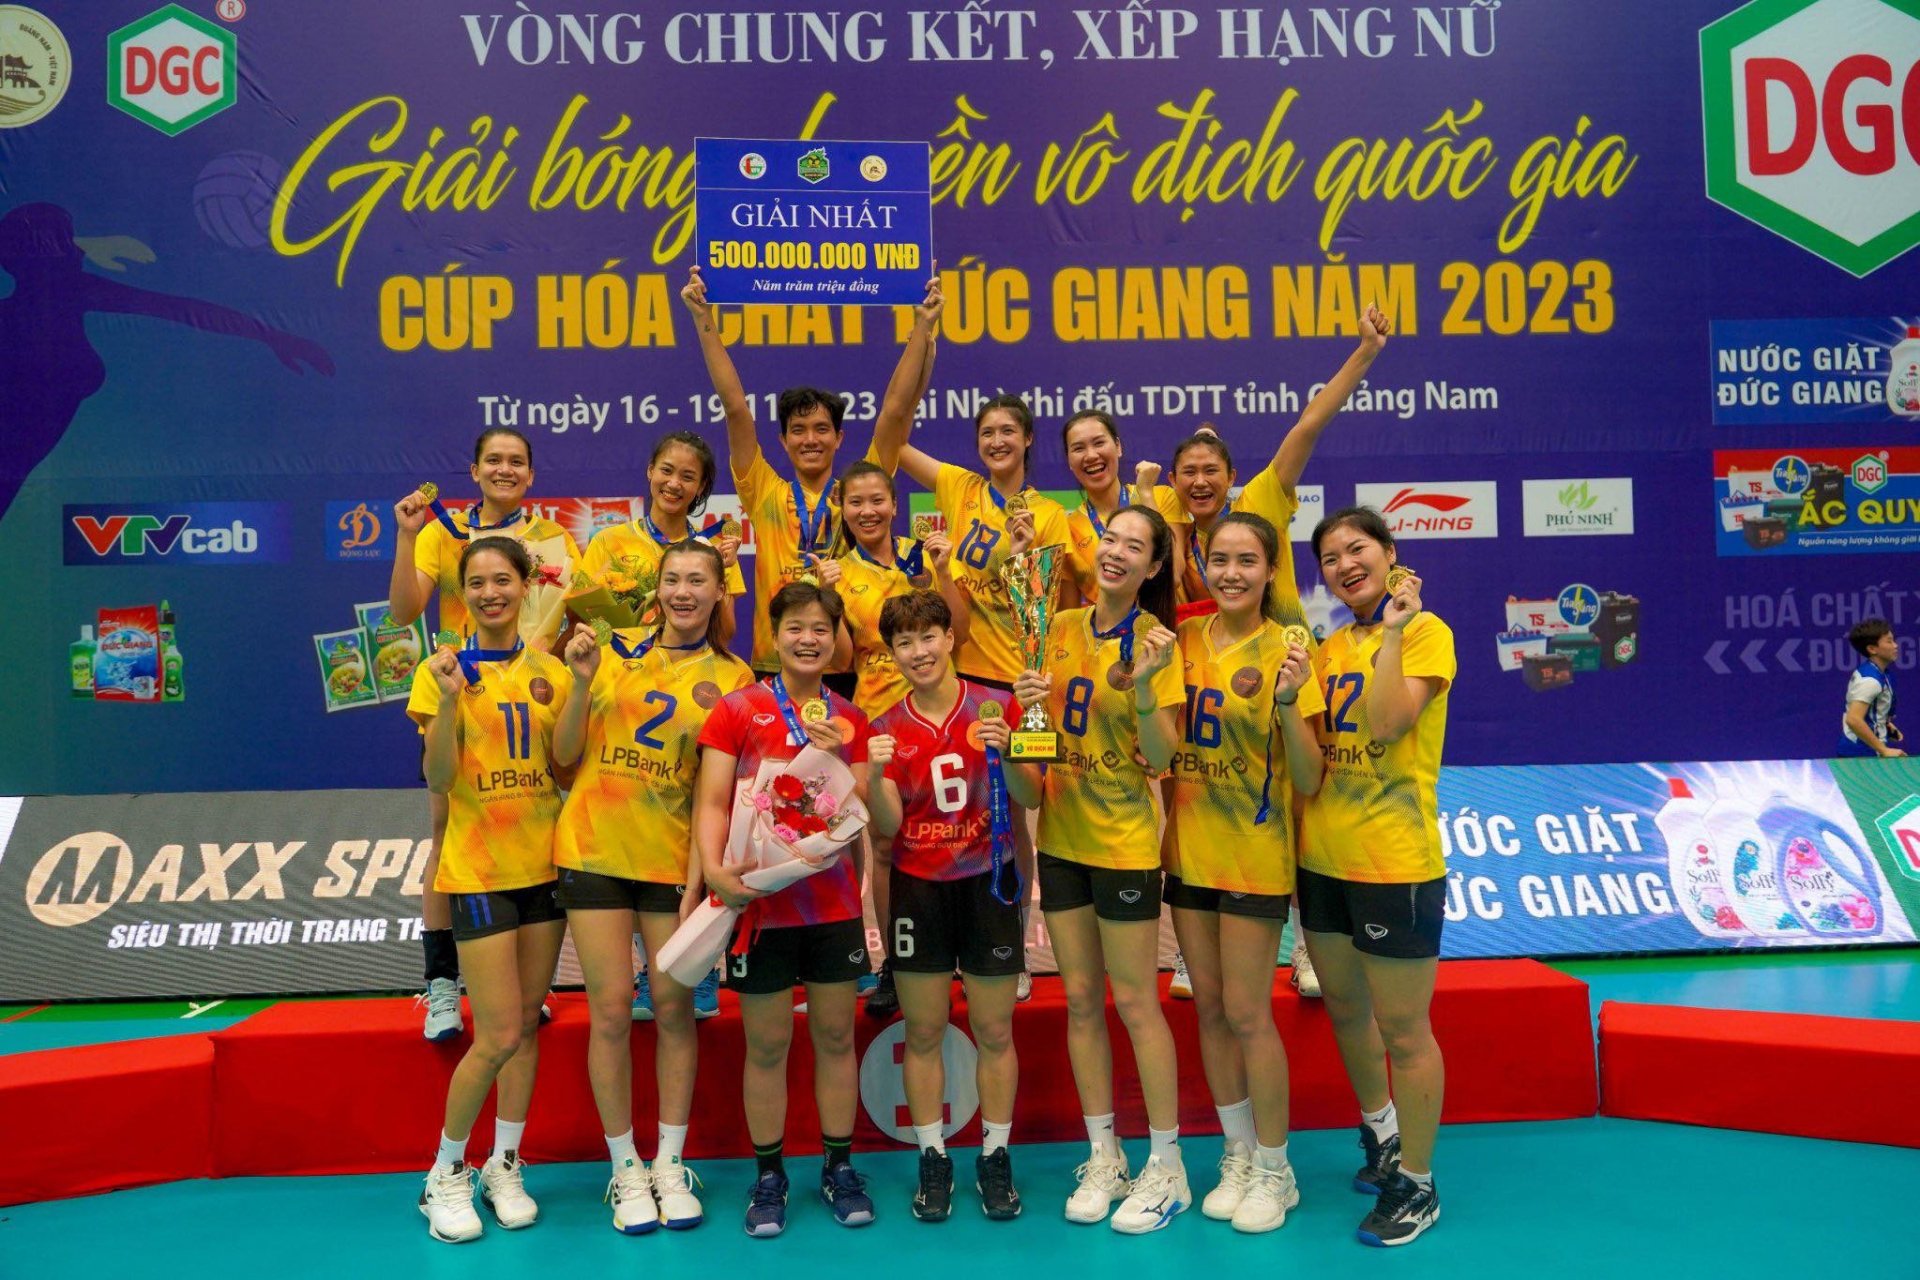 Ninh Bình LPBank vô địch giải bóng chuyền VĐQG lần đầu tiên trong lịch sử 359149